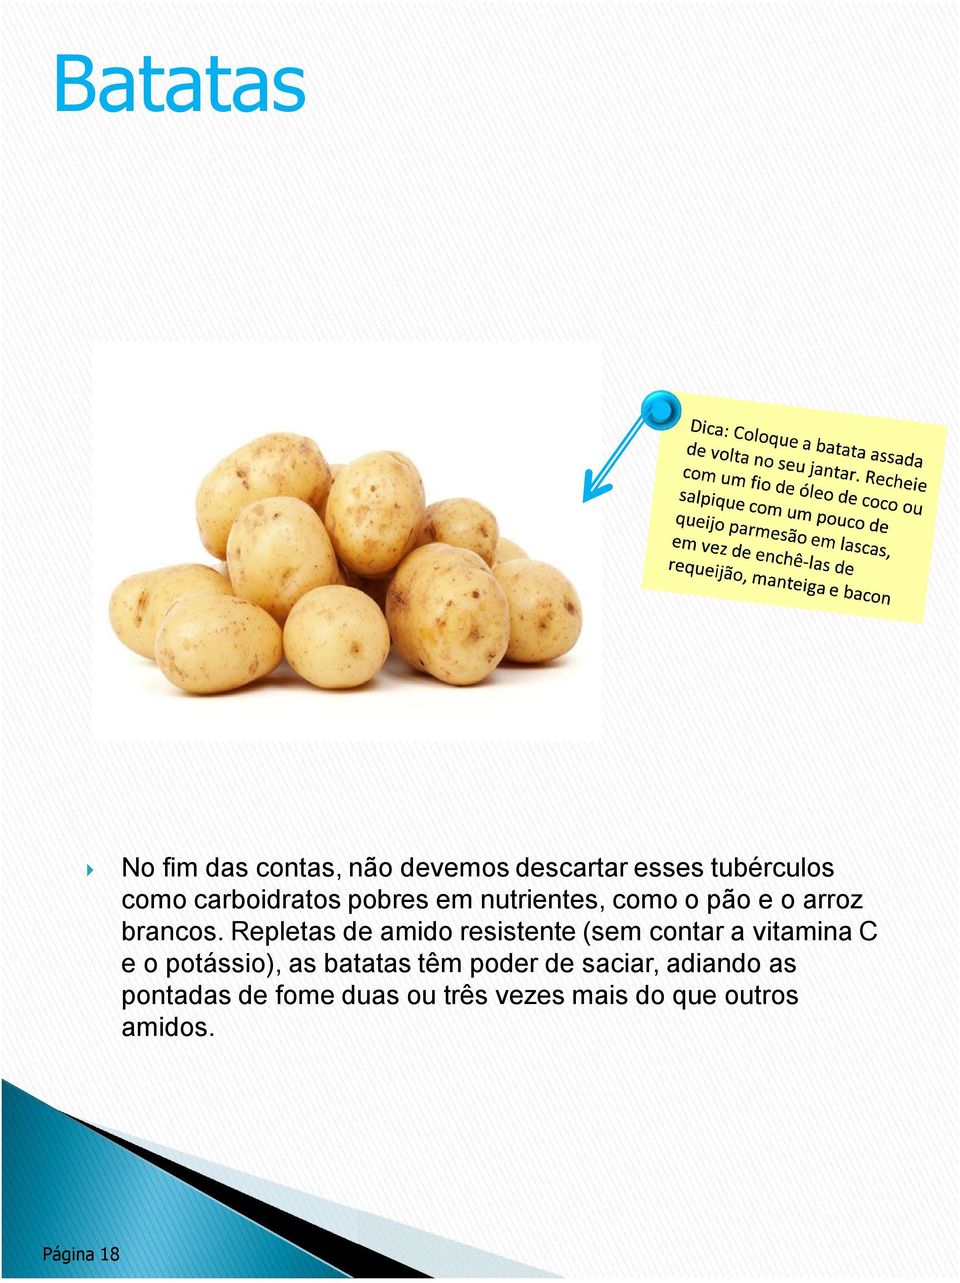 Repletas de amido resistente (sem contar a vitamina C e o potássio), as batatas